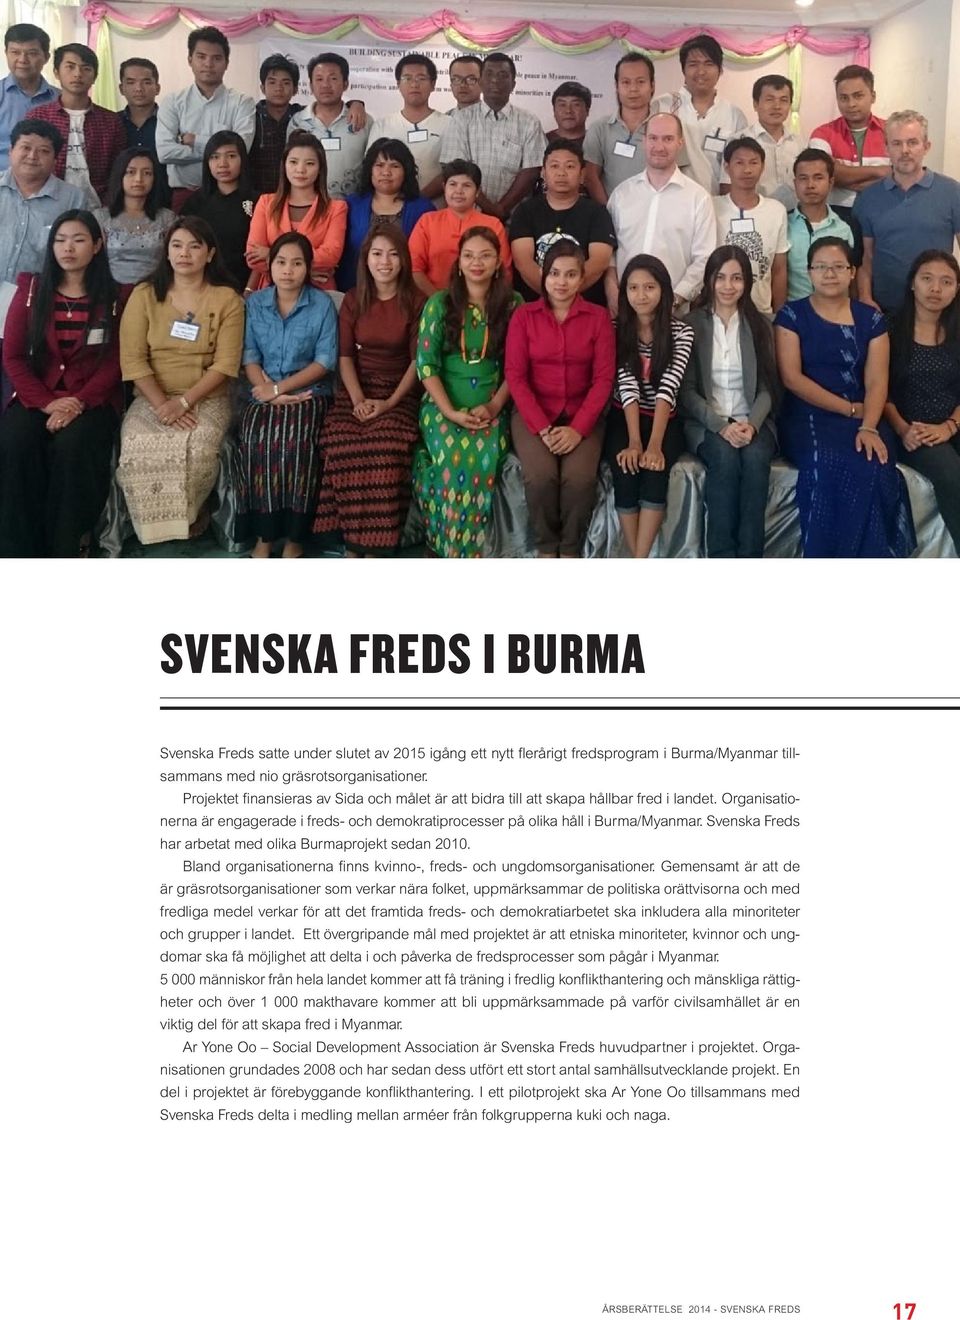 Svenska Freds har arbetat med olika Burmaprojekt sedan 2010. Bland organisationerna finns kvinno-, freds- och ungdomsorganisationer.